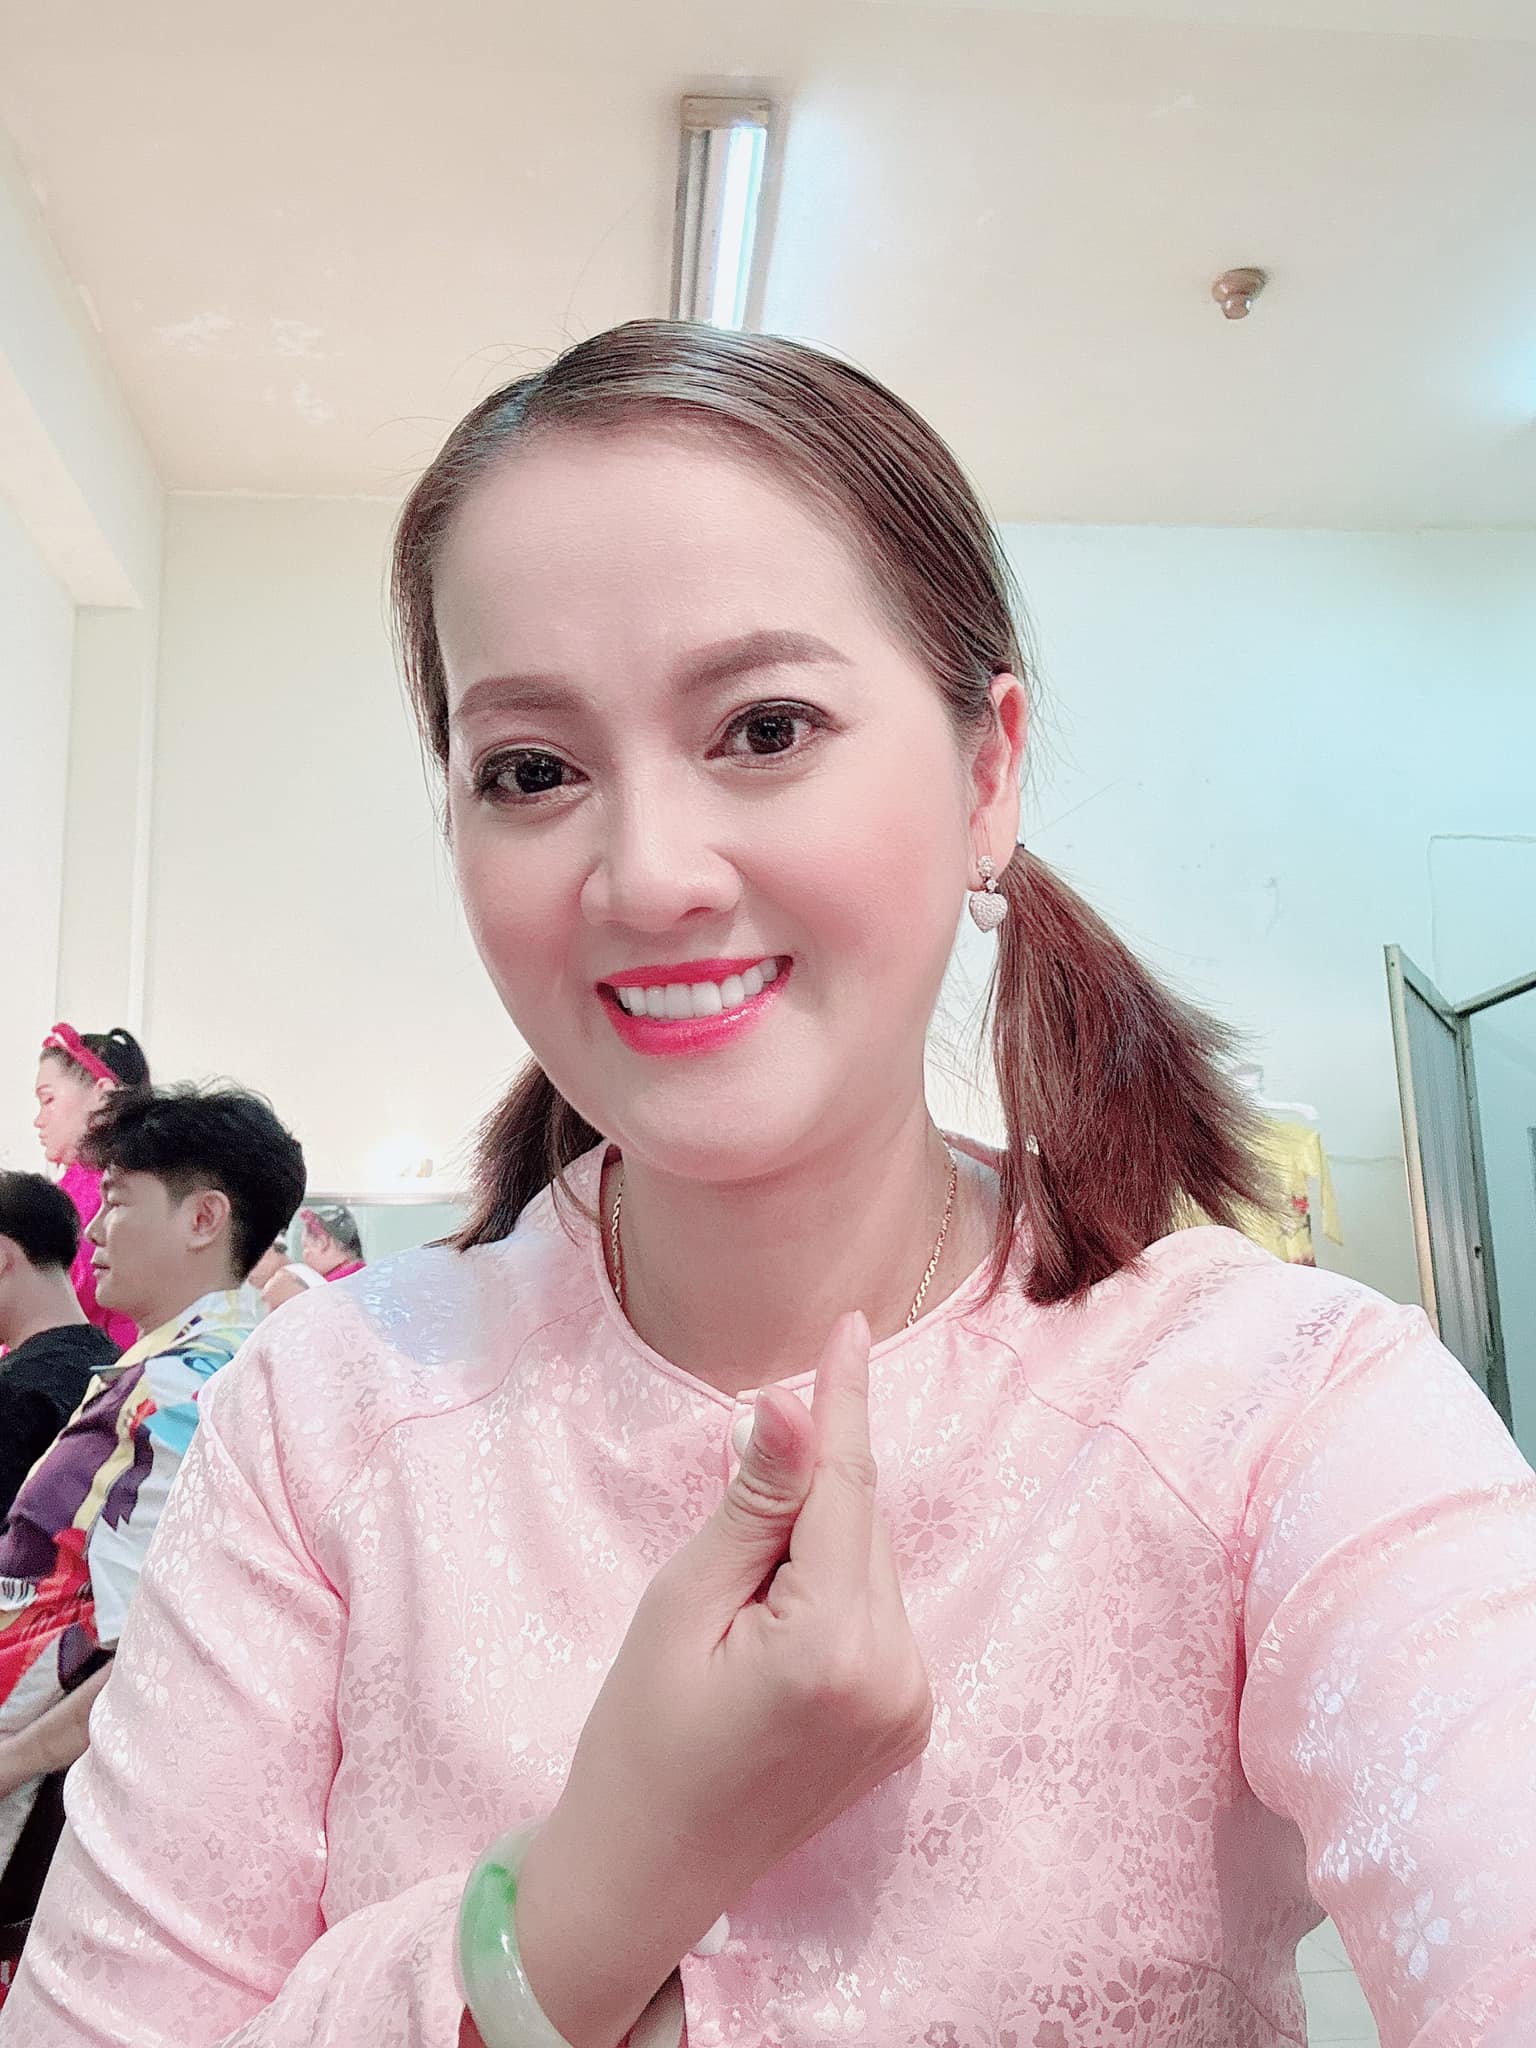 Hồng Loan - con gái cố NSUT Vũ Linh 'kêu cứu', bị khán giả đòi sao kê tiền xây mộ phần của cha - ảnh 2